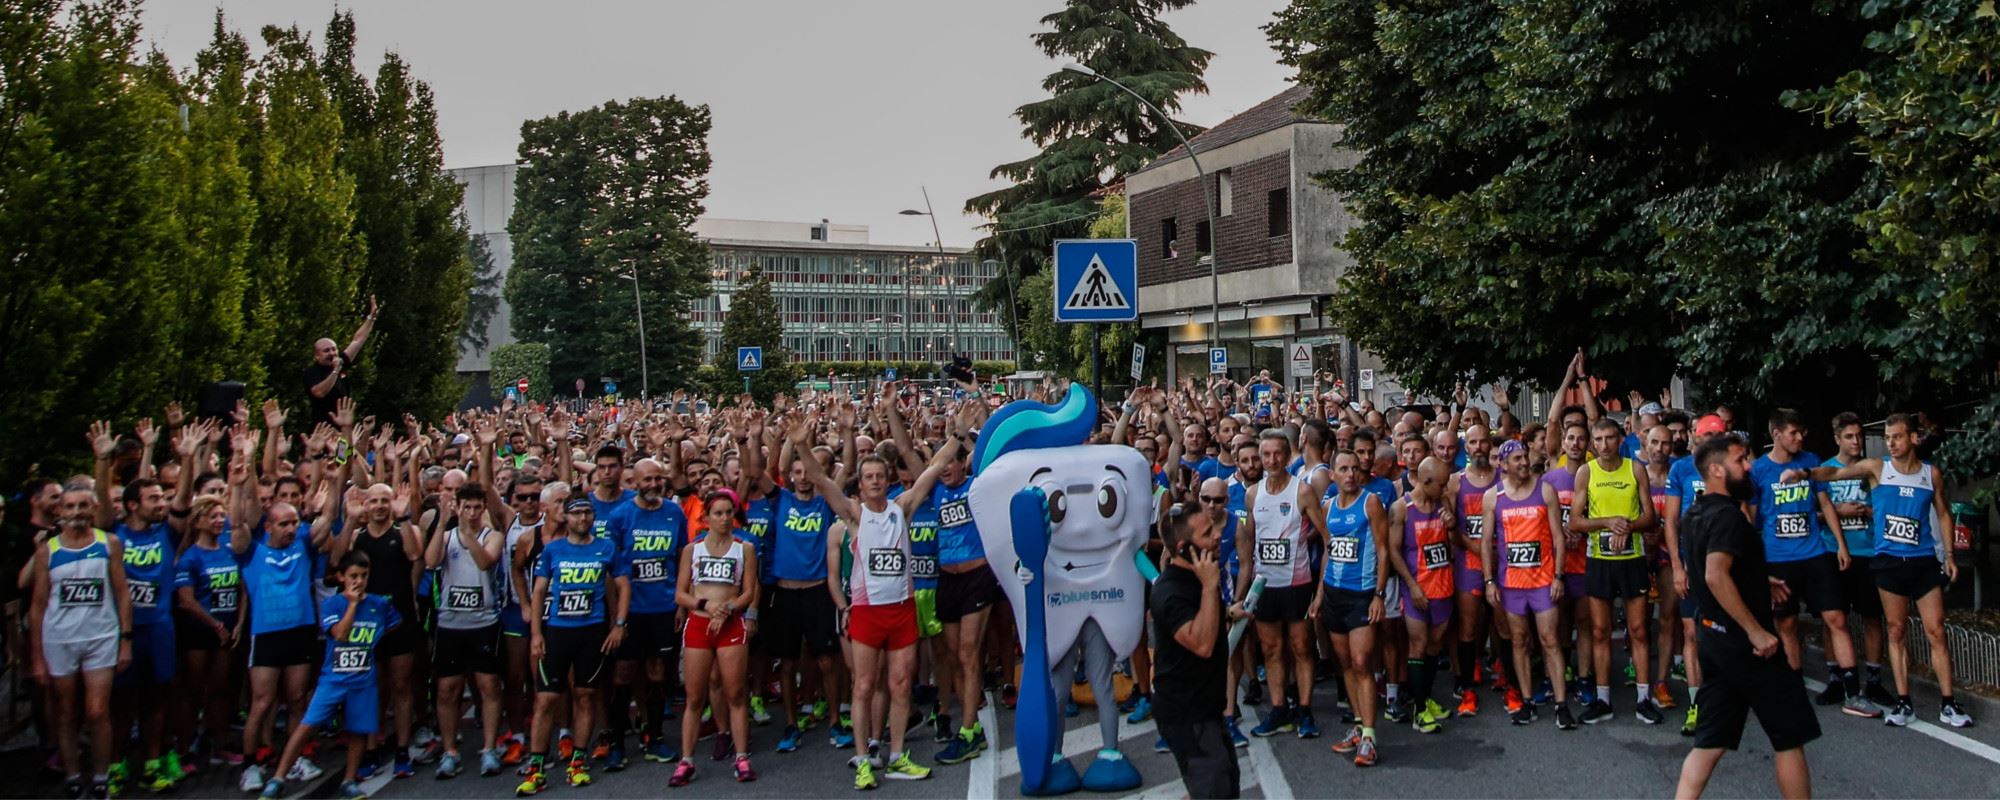 BlueSmile RUN 2018, la corsa in notturna che ha portato 800 runner per le strade di Vimercate!